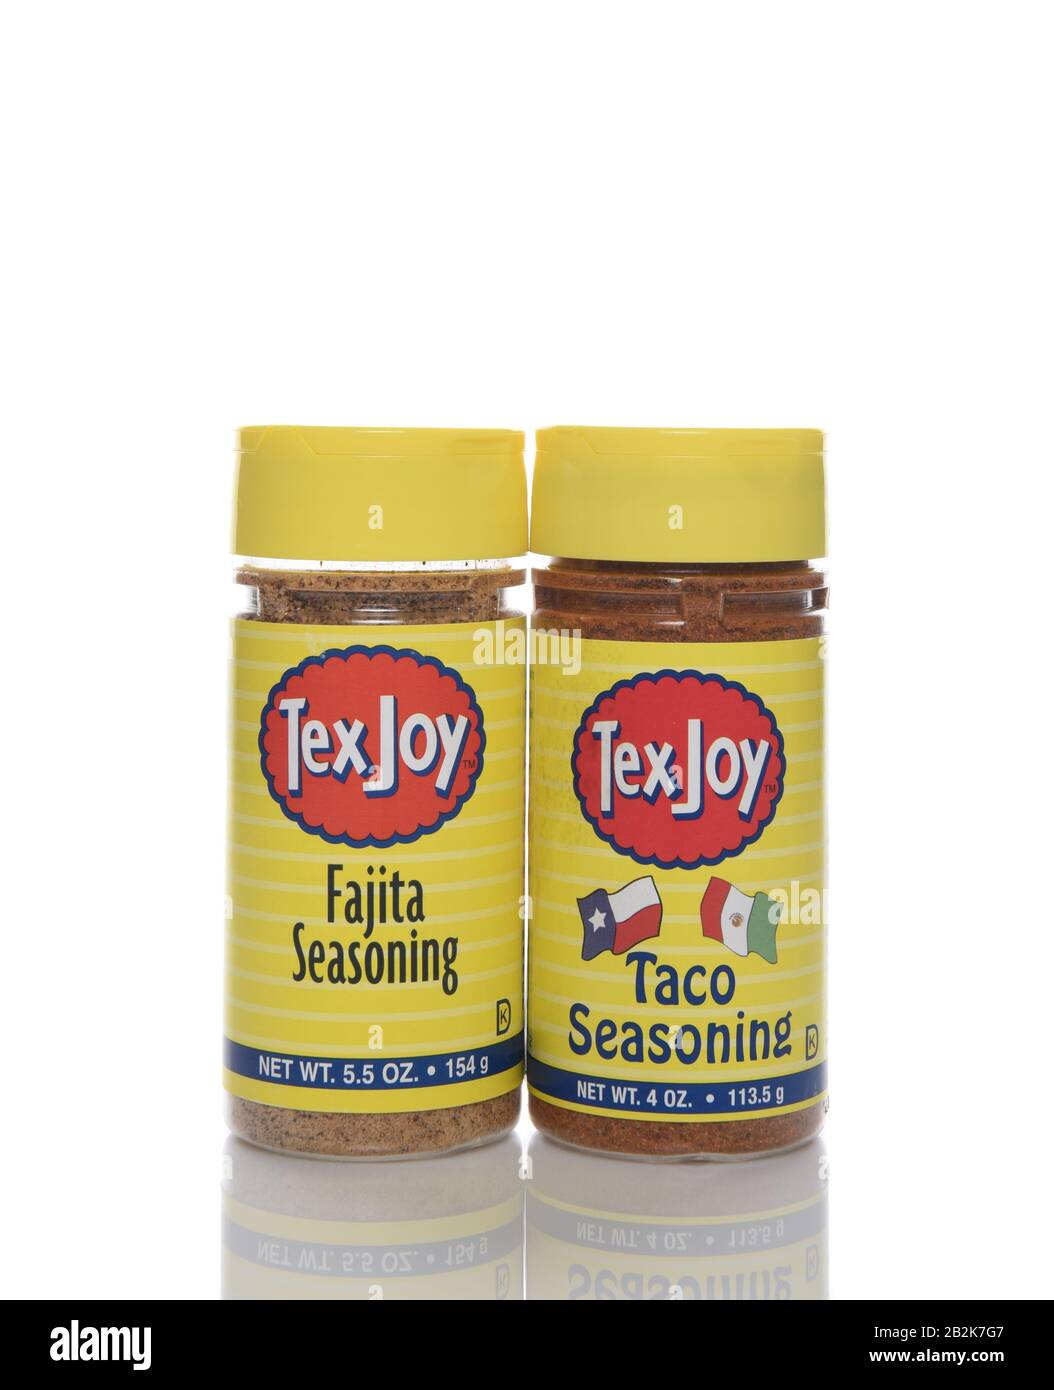 Irvine, CALIF - 30. AUGUST 2018: TeX Joy Seasonings, EINE Flasche Fajita und Taco Seasoning von der Texas Coffee Company von Beaumont, TX. Stockfoto